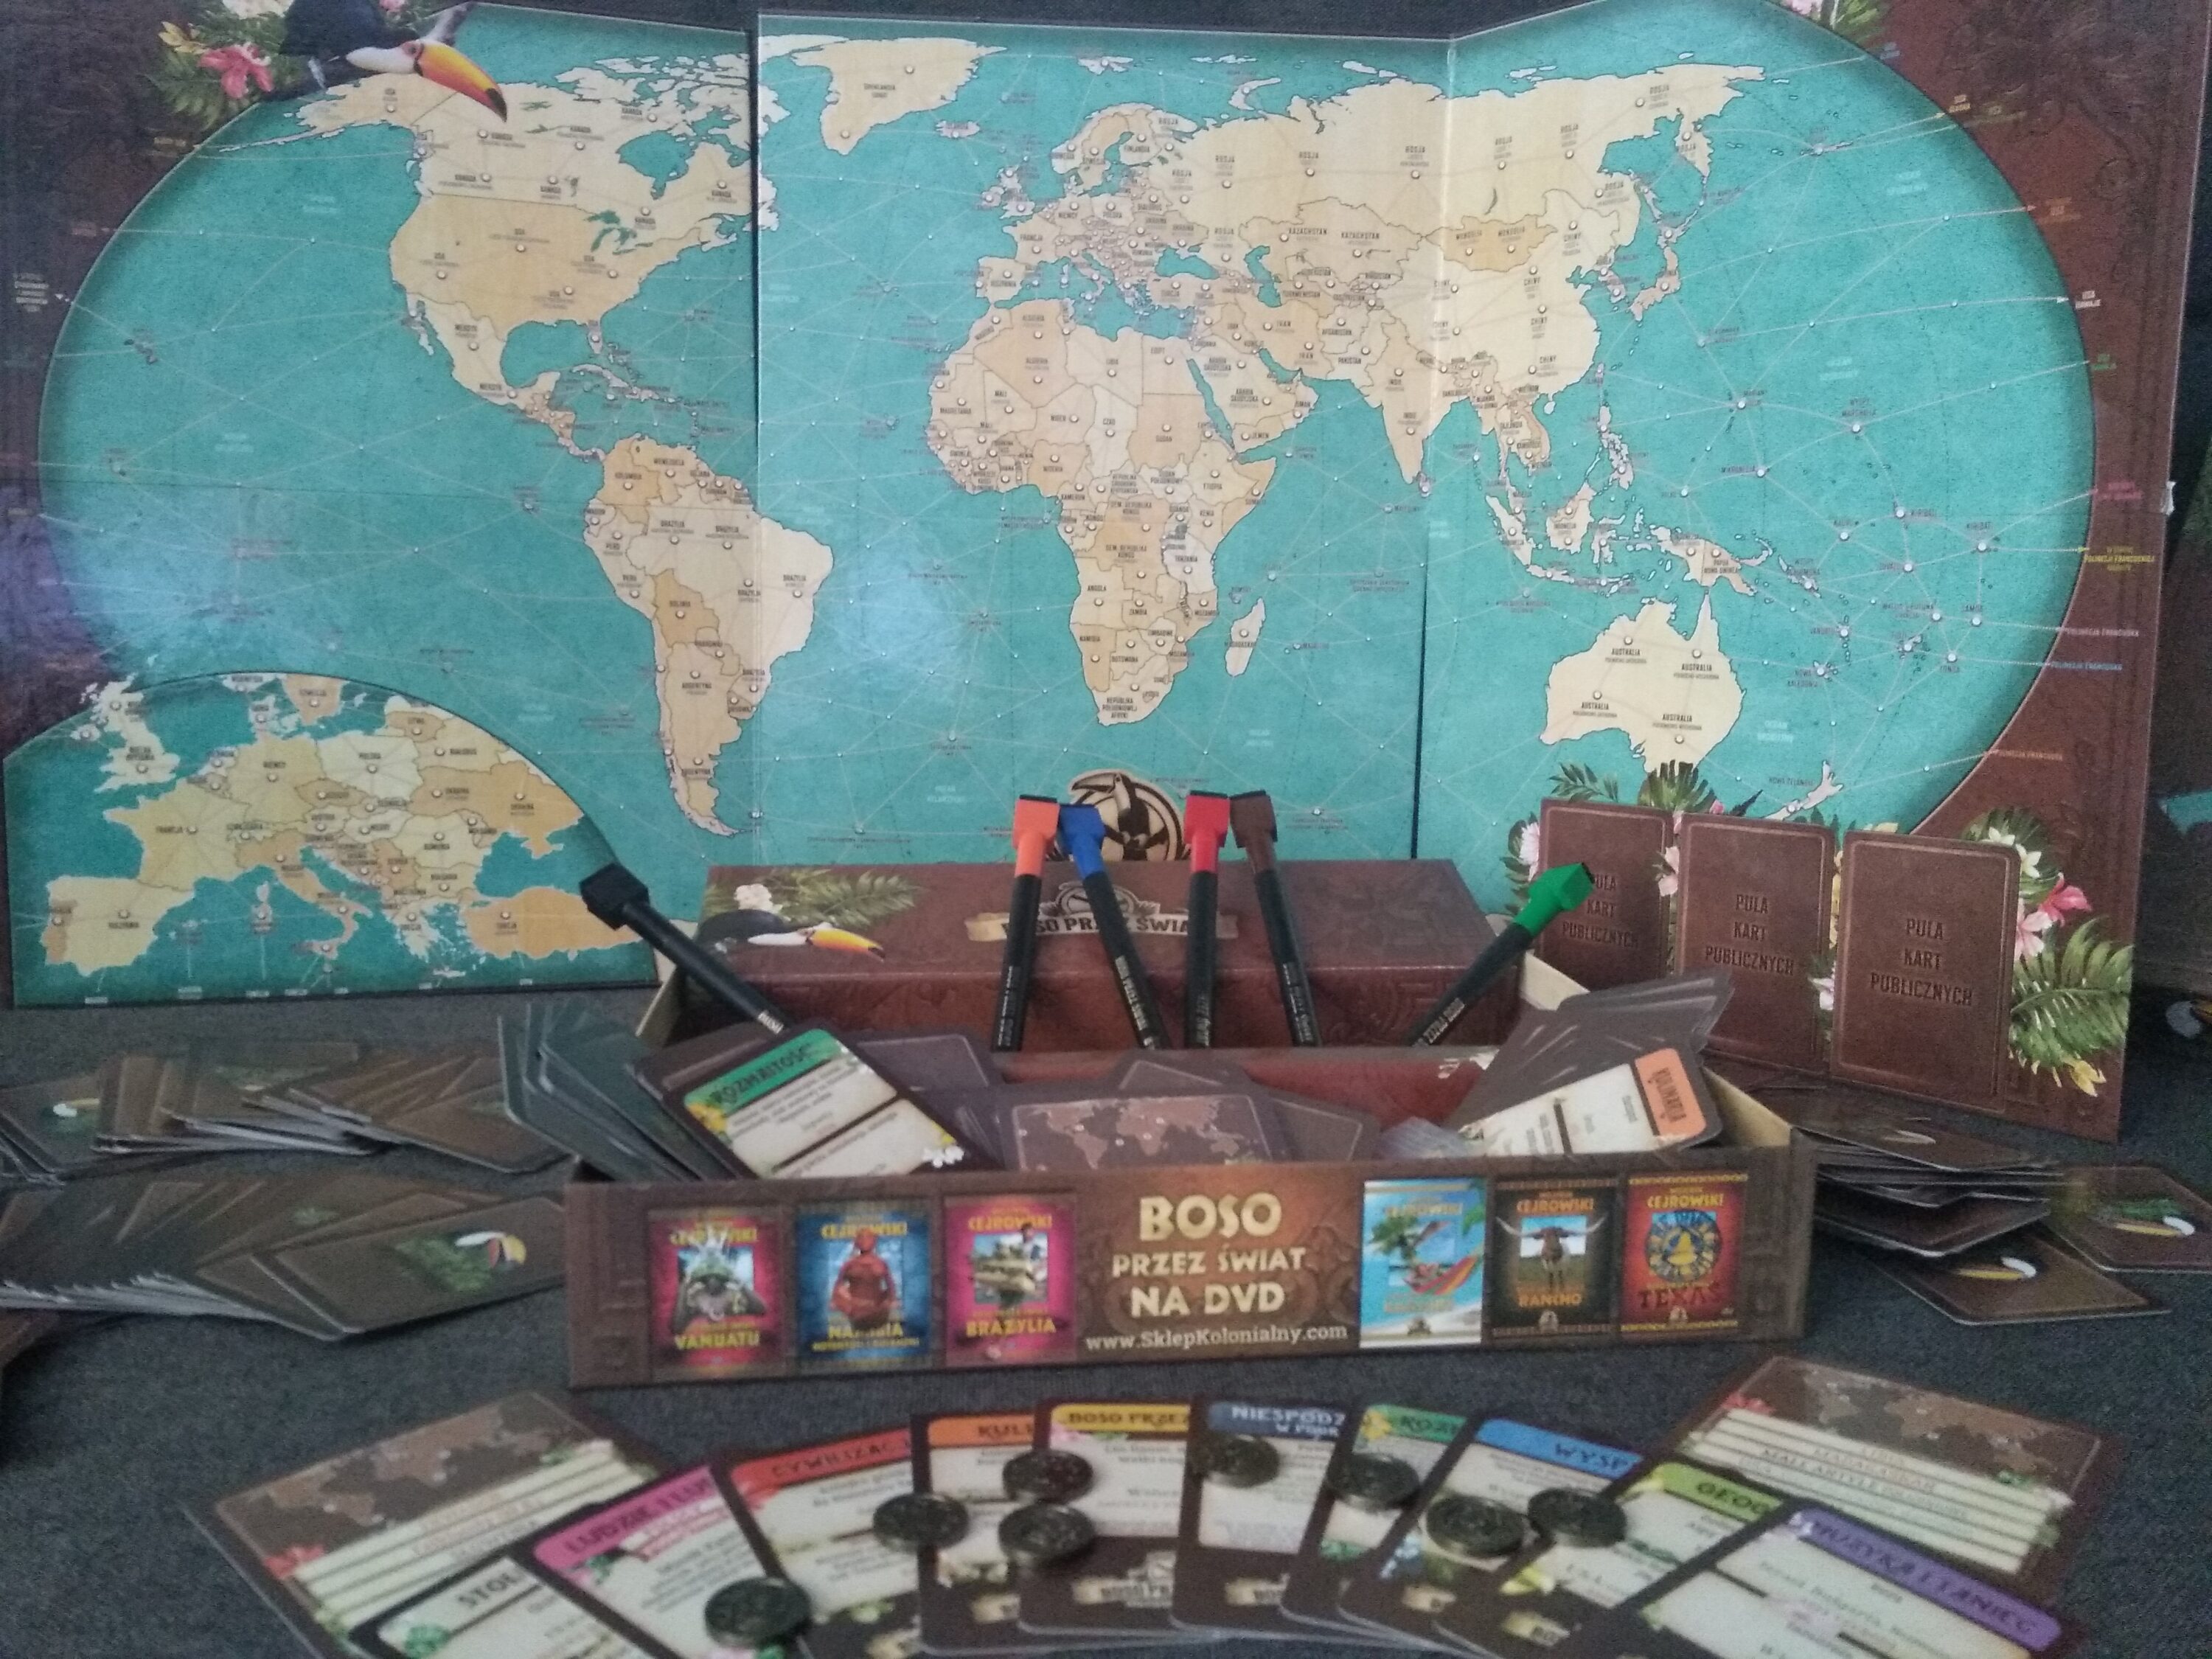 Mazakiem po mapie. „Boso przez świat” – recenzja gry planszowej